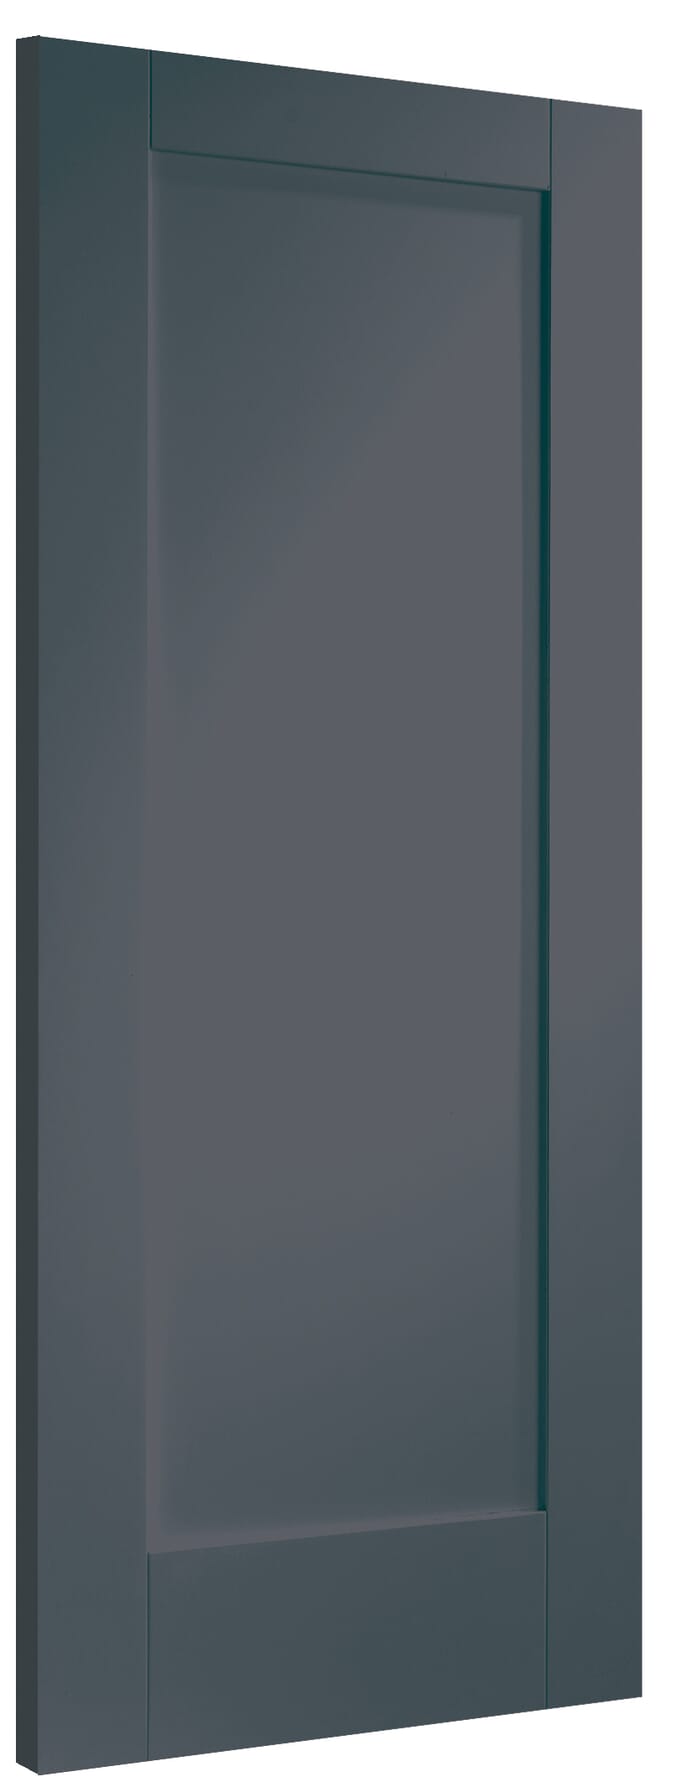 838x1981x44mm (33") Pattern 10 Cinder Grey Fire Door